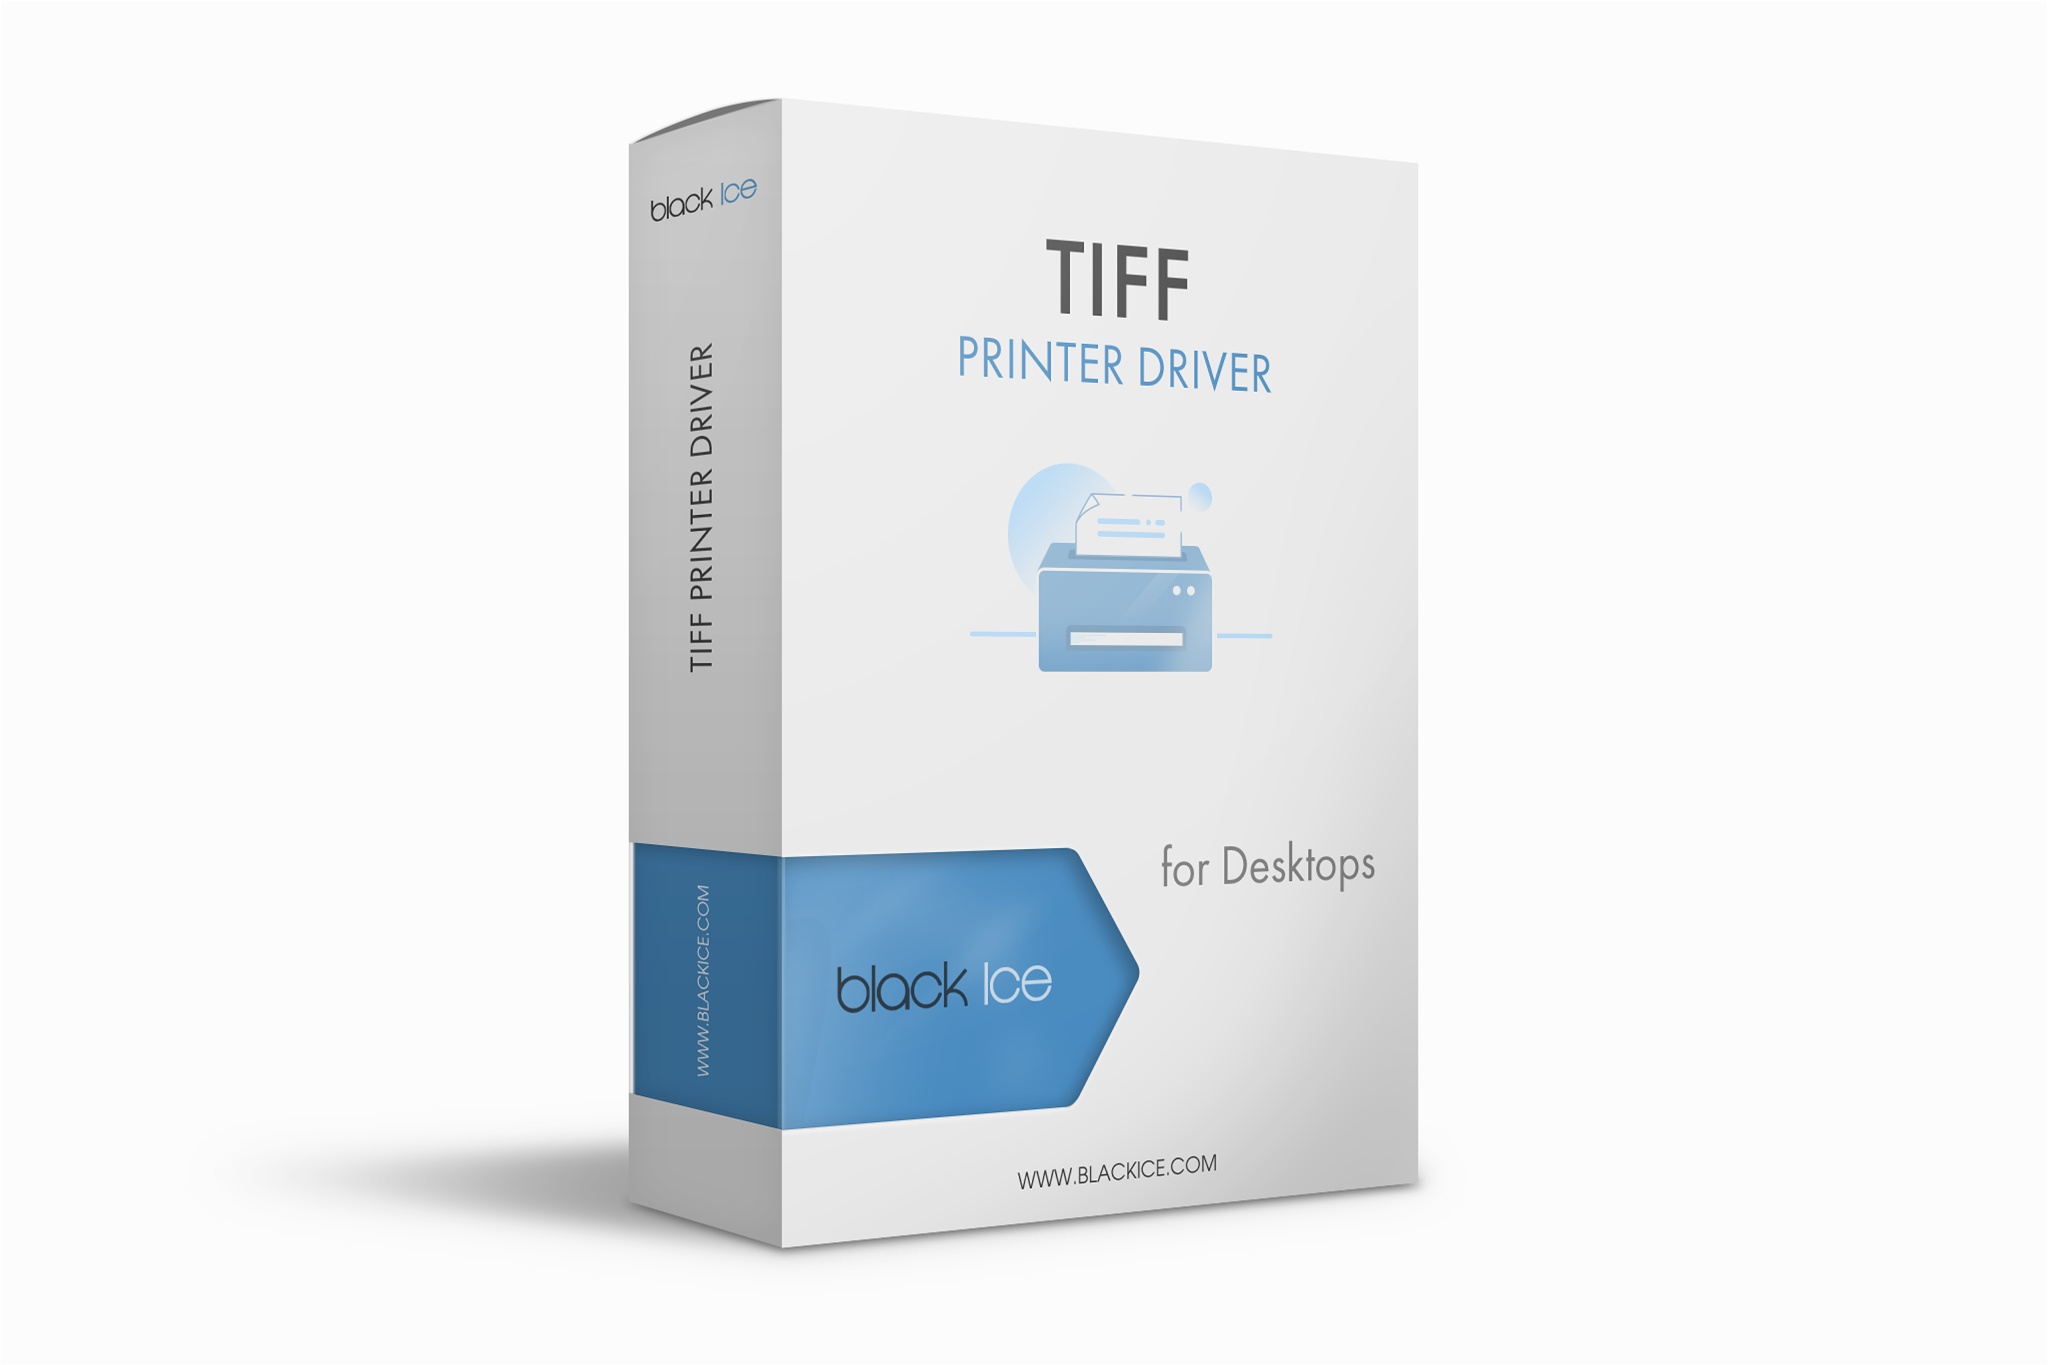 TIFF/Monochrome Printer Driver Subscription (Single License and 5 multi-printers or ports)